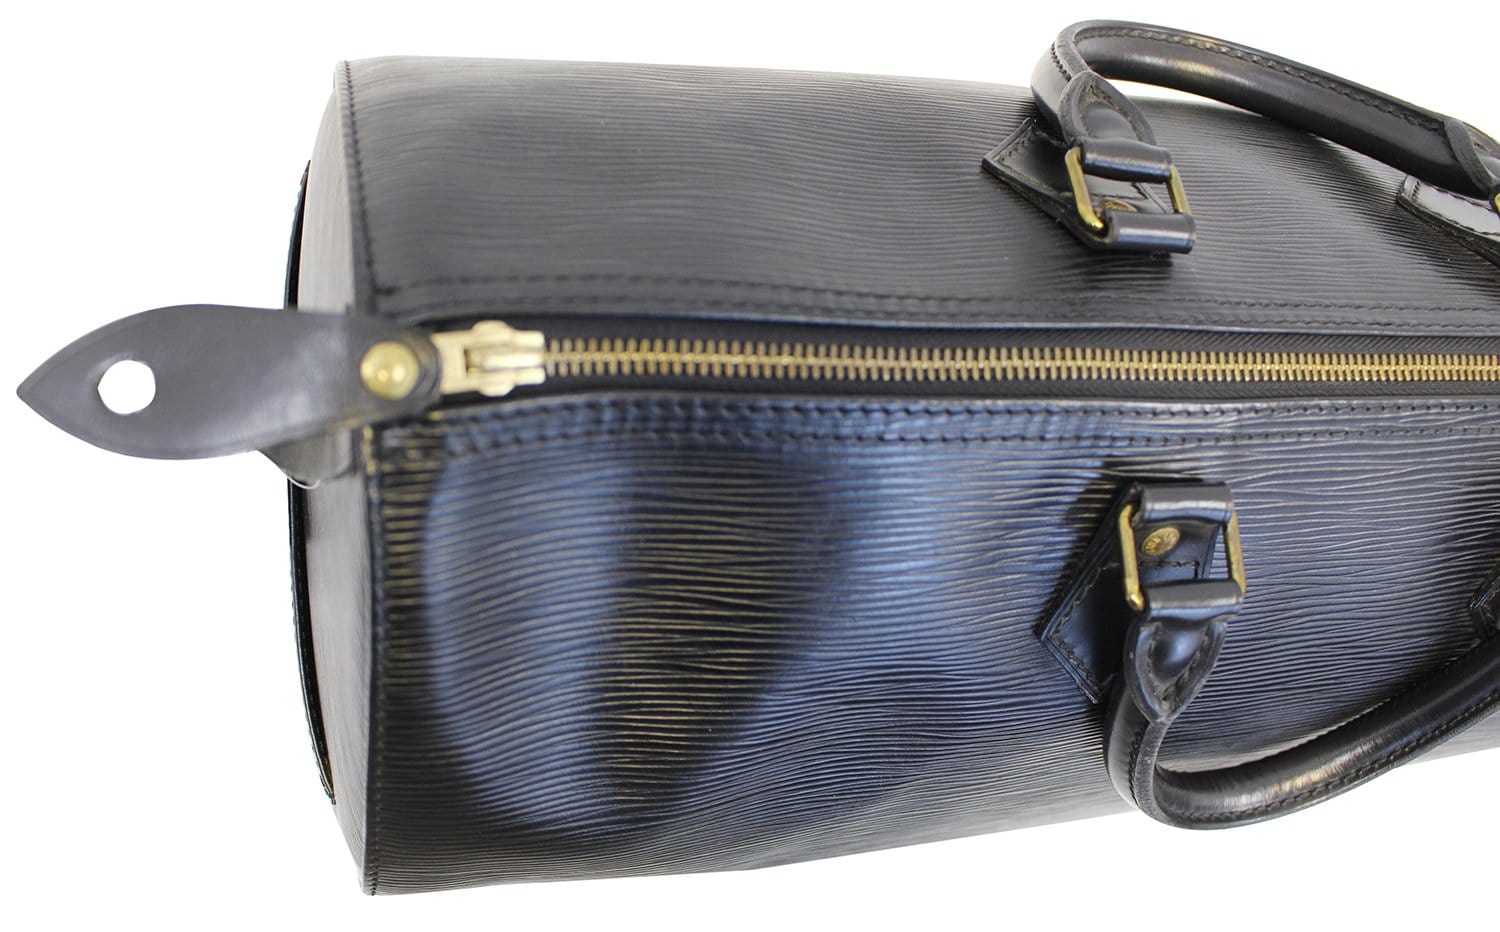 Louis Vuitton Brown Epi Speedy 40 Handbag M42983 VI0912 59526